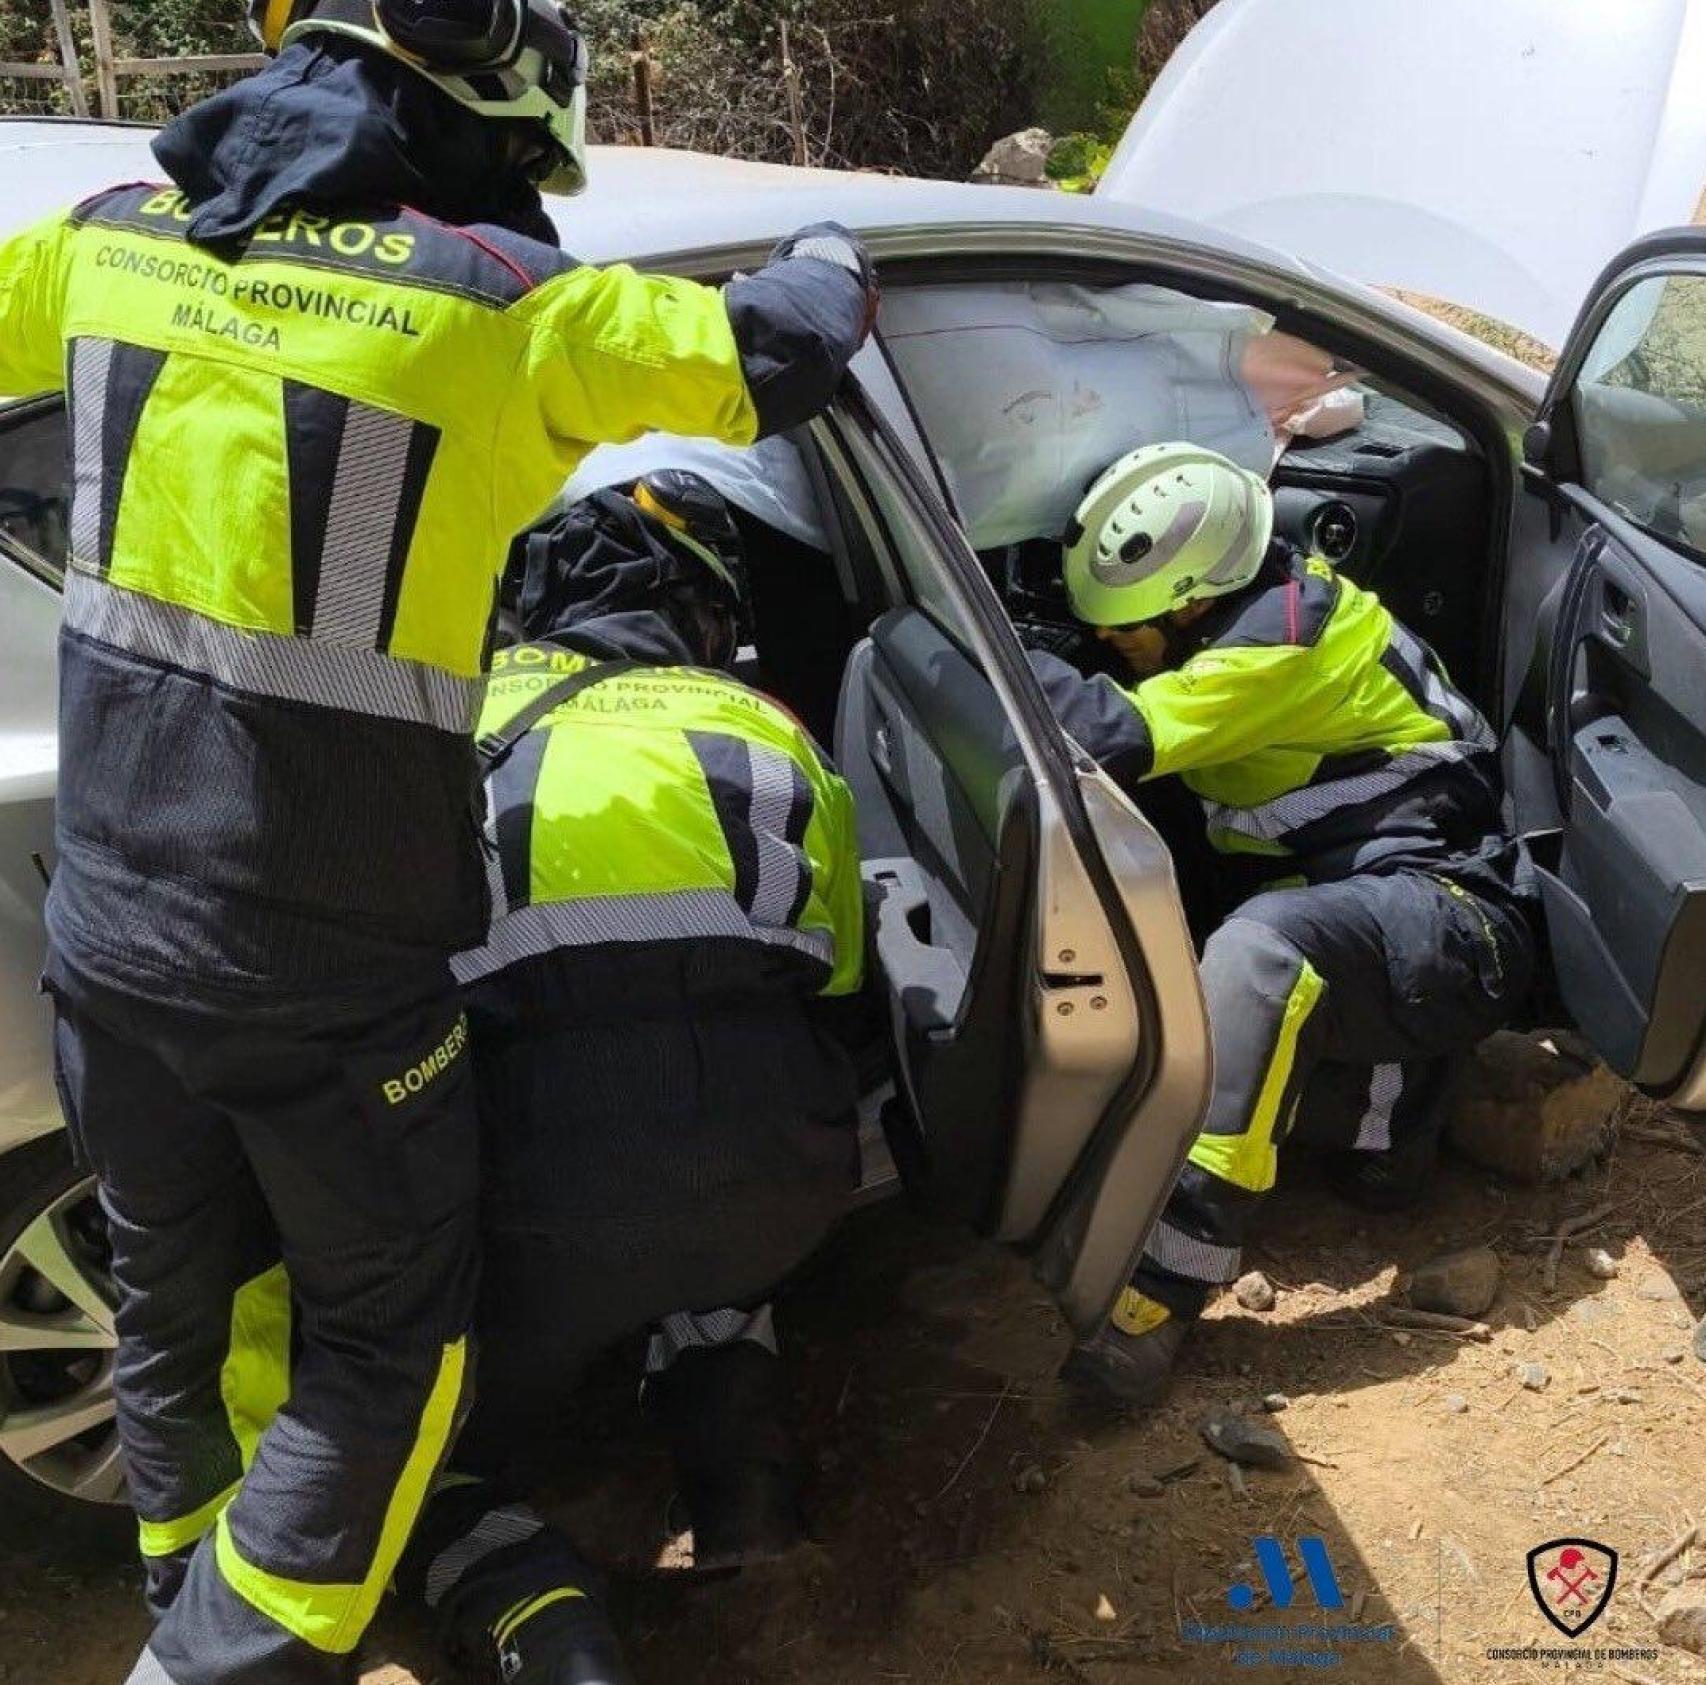 Intervención de los efectivos del Consorcio Provincial de Bomberos de Málaga en el accidente ocurrido en Casarabonela.